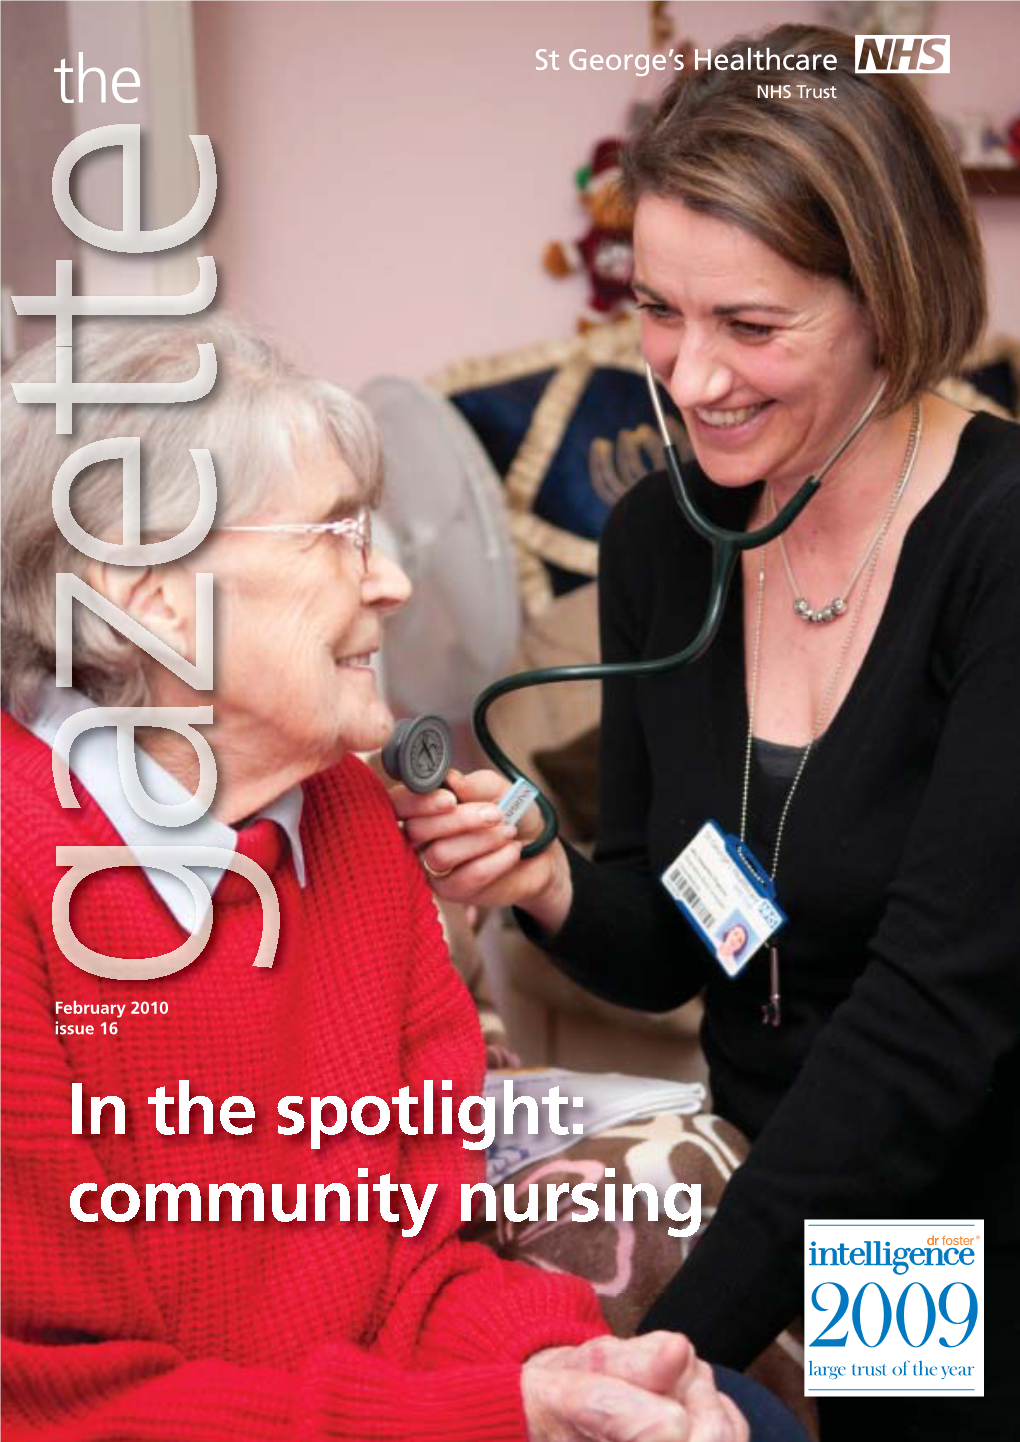 In the Spotlight: Community Nursing  ODUJHWUXVWRIWKH\HDU Contents